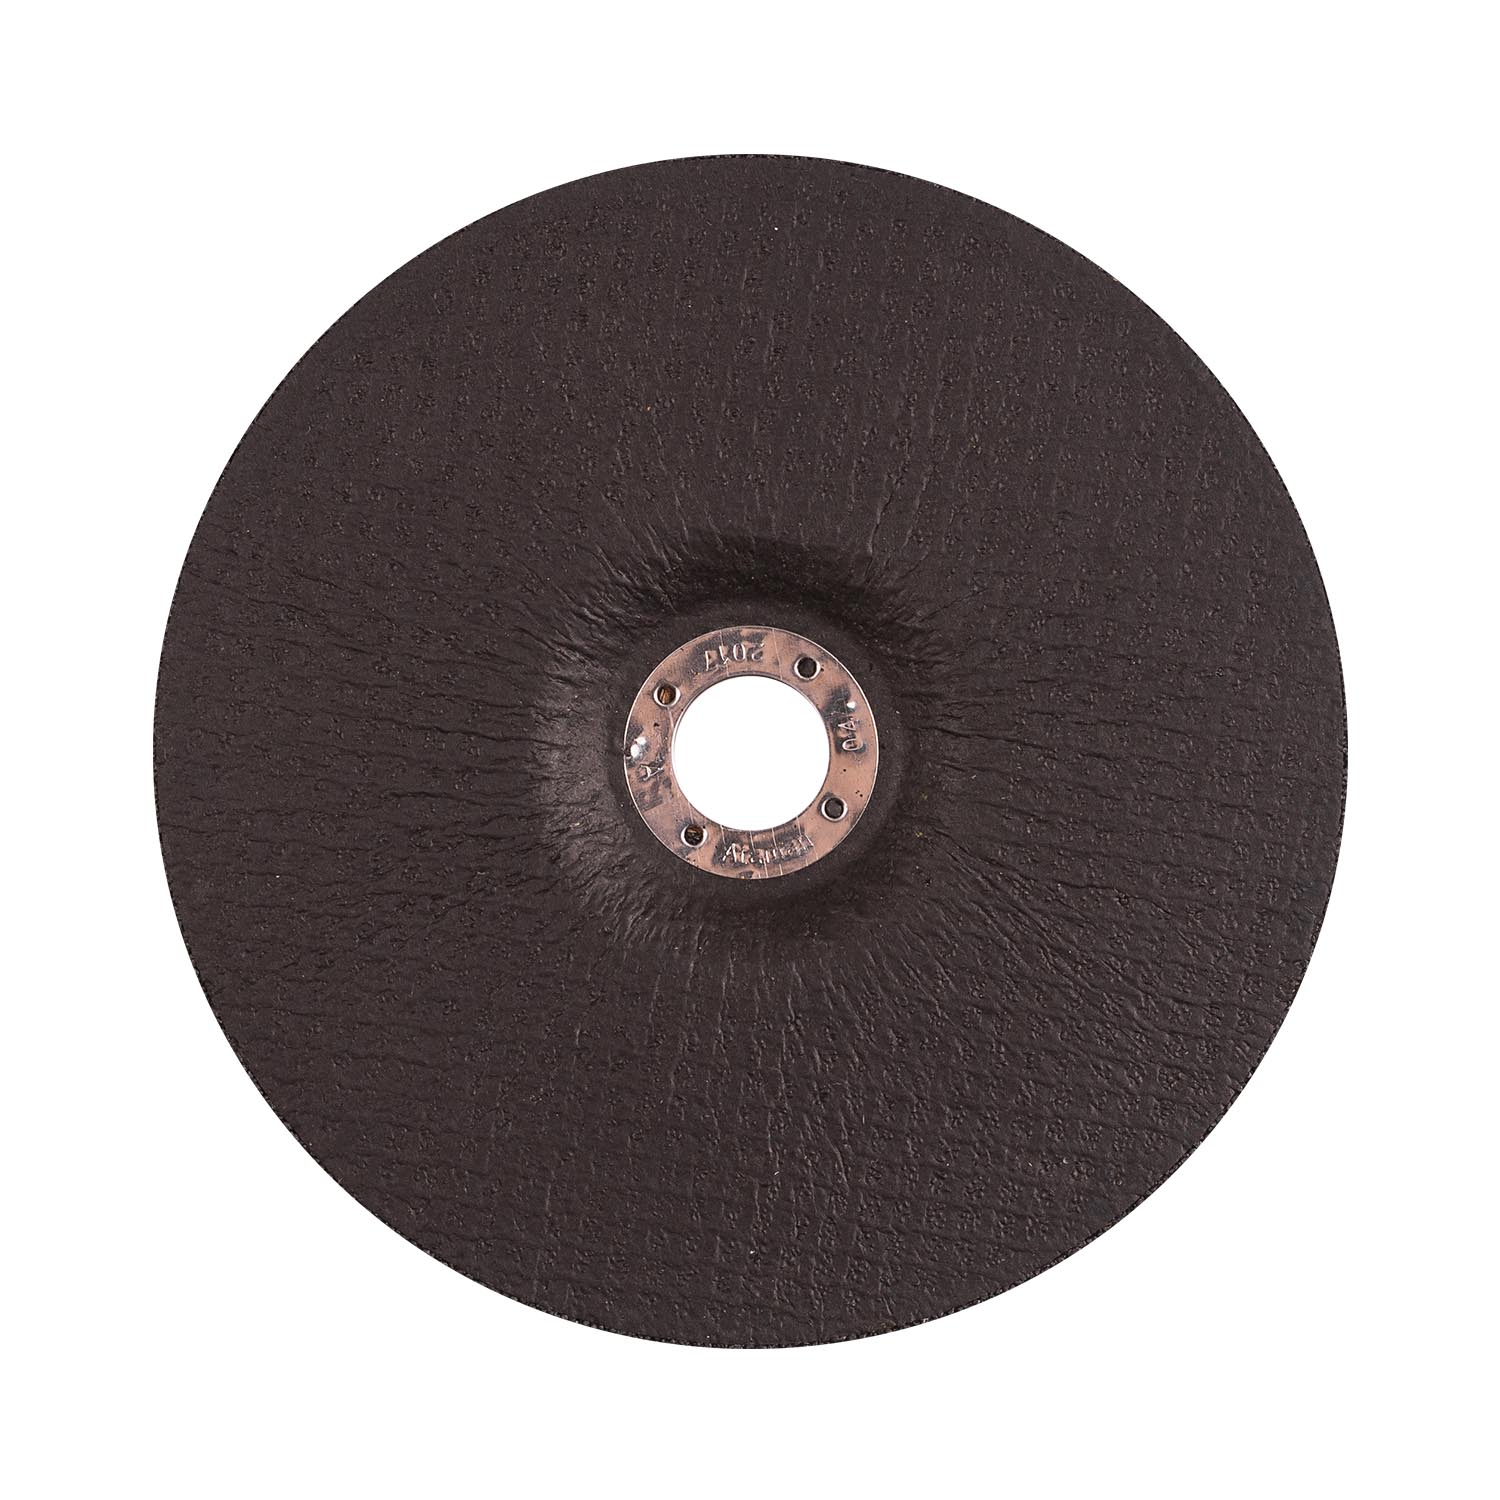 Grinding wheel for metal Ataman 27 14А 180х6.0х22.23